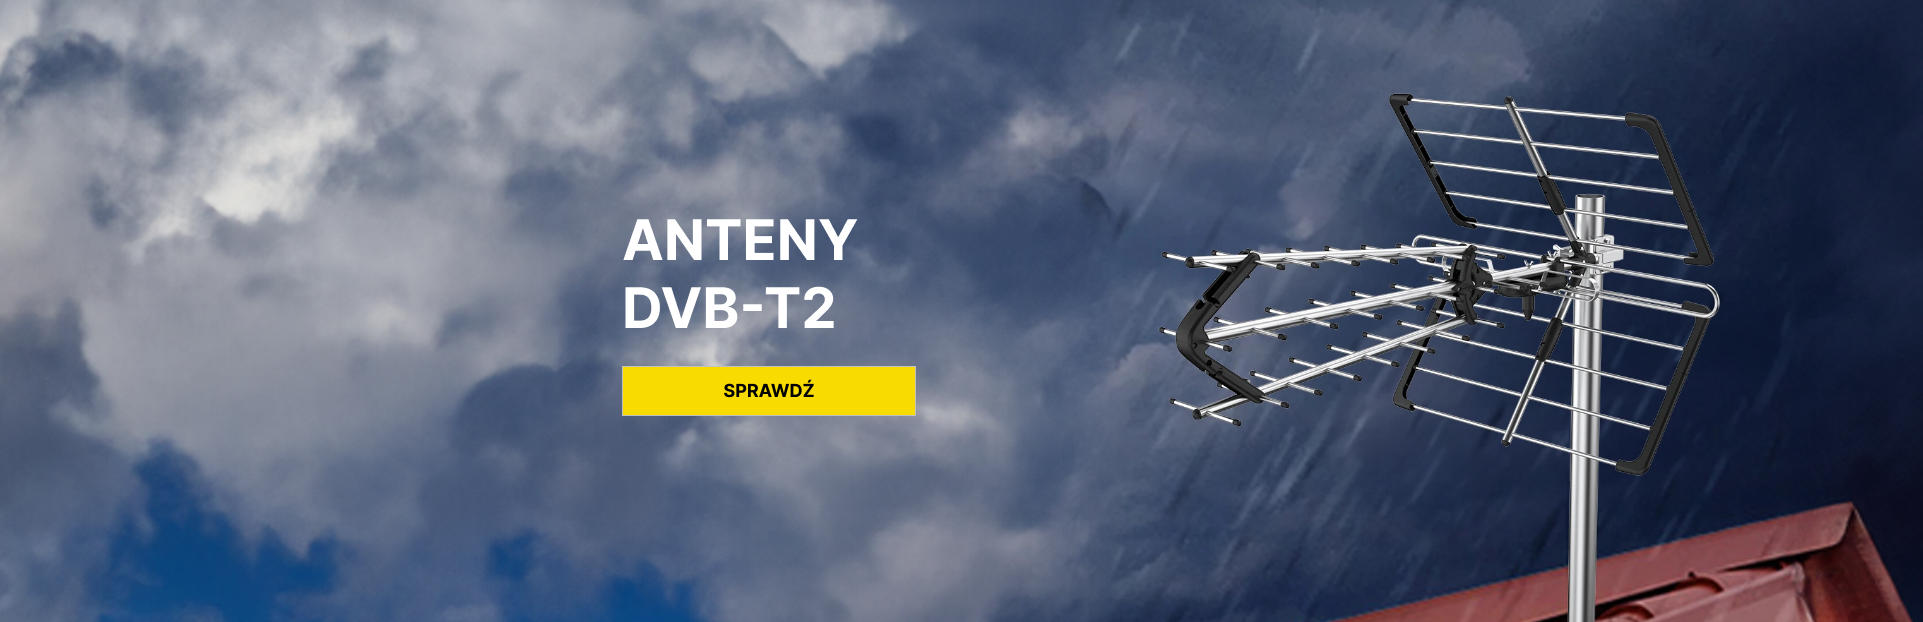 Anteny DVB-T2